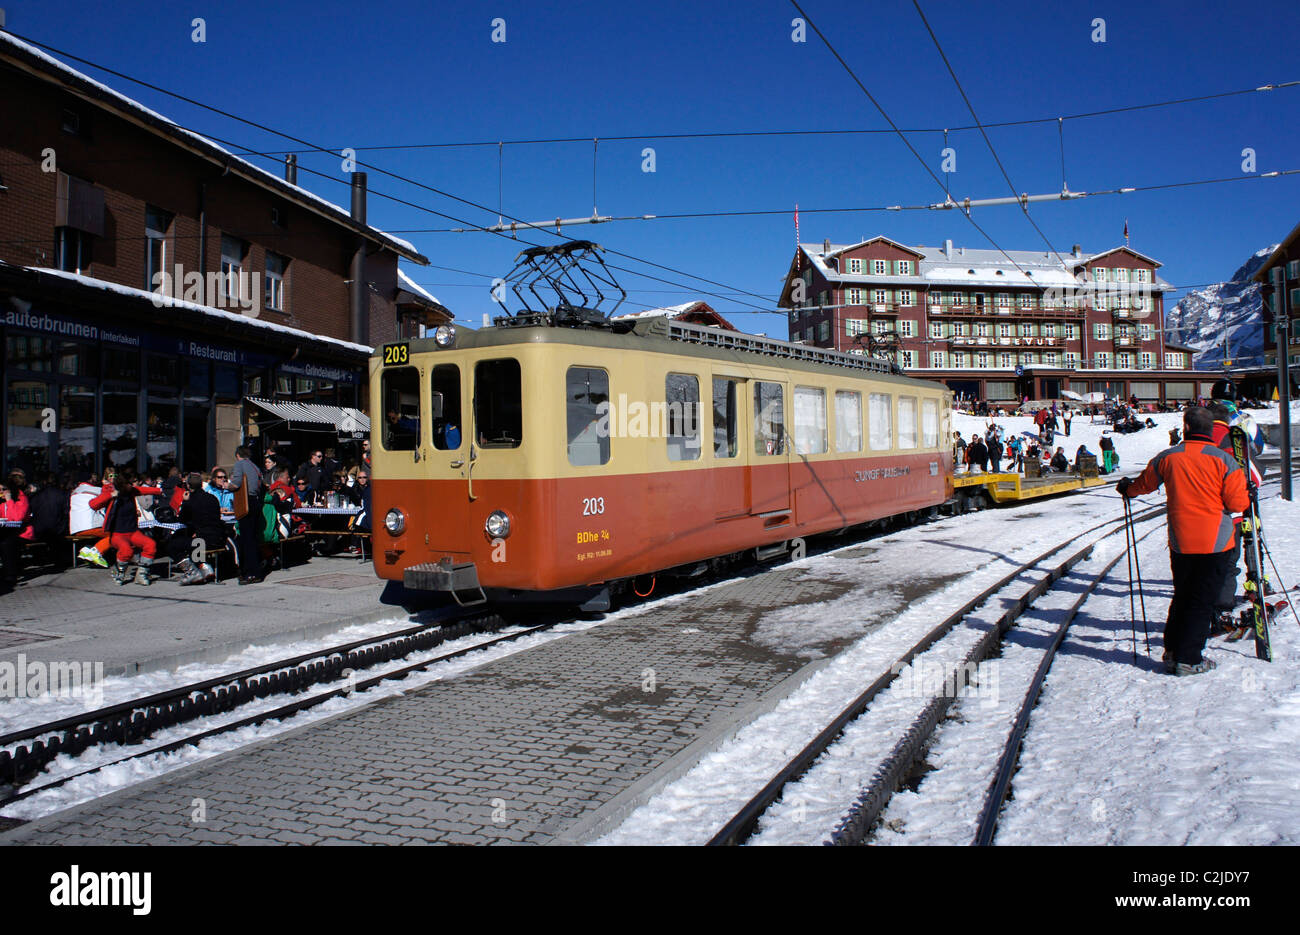 Kleine Scheidegg, Winter, Jungfraujoch railroad station, Bernese alps, Switzerland Stock Photo